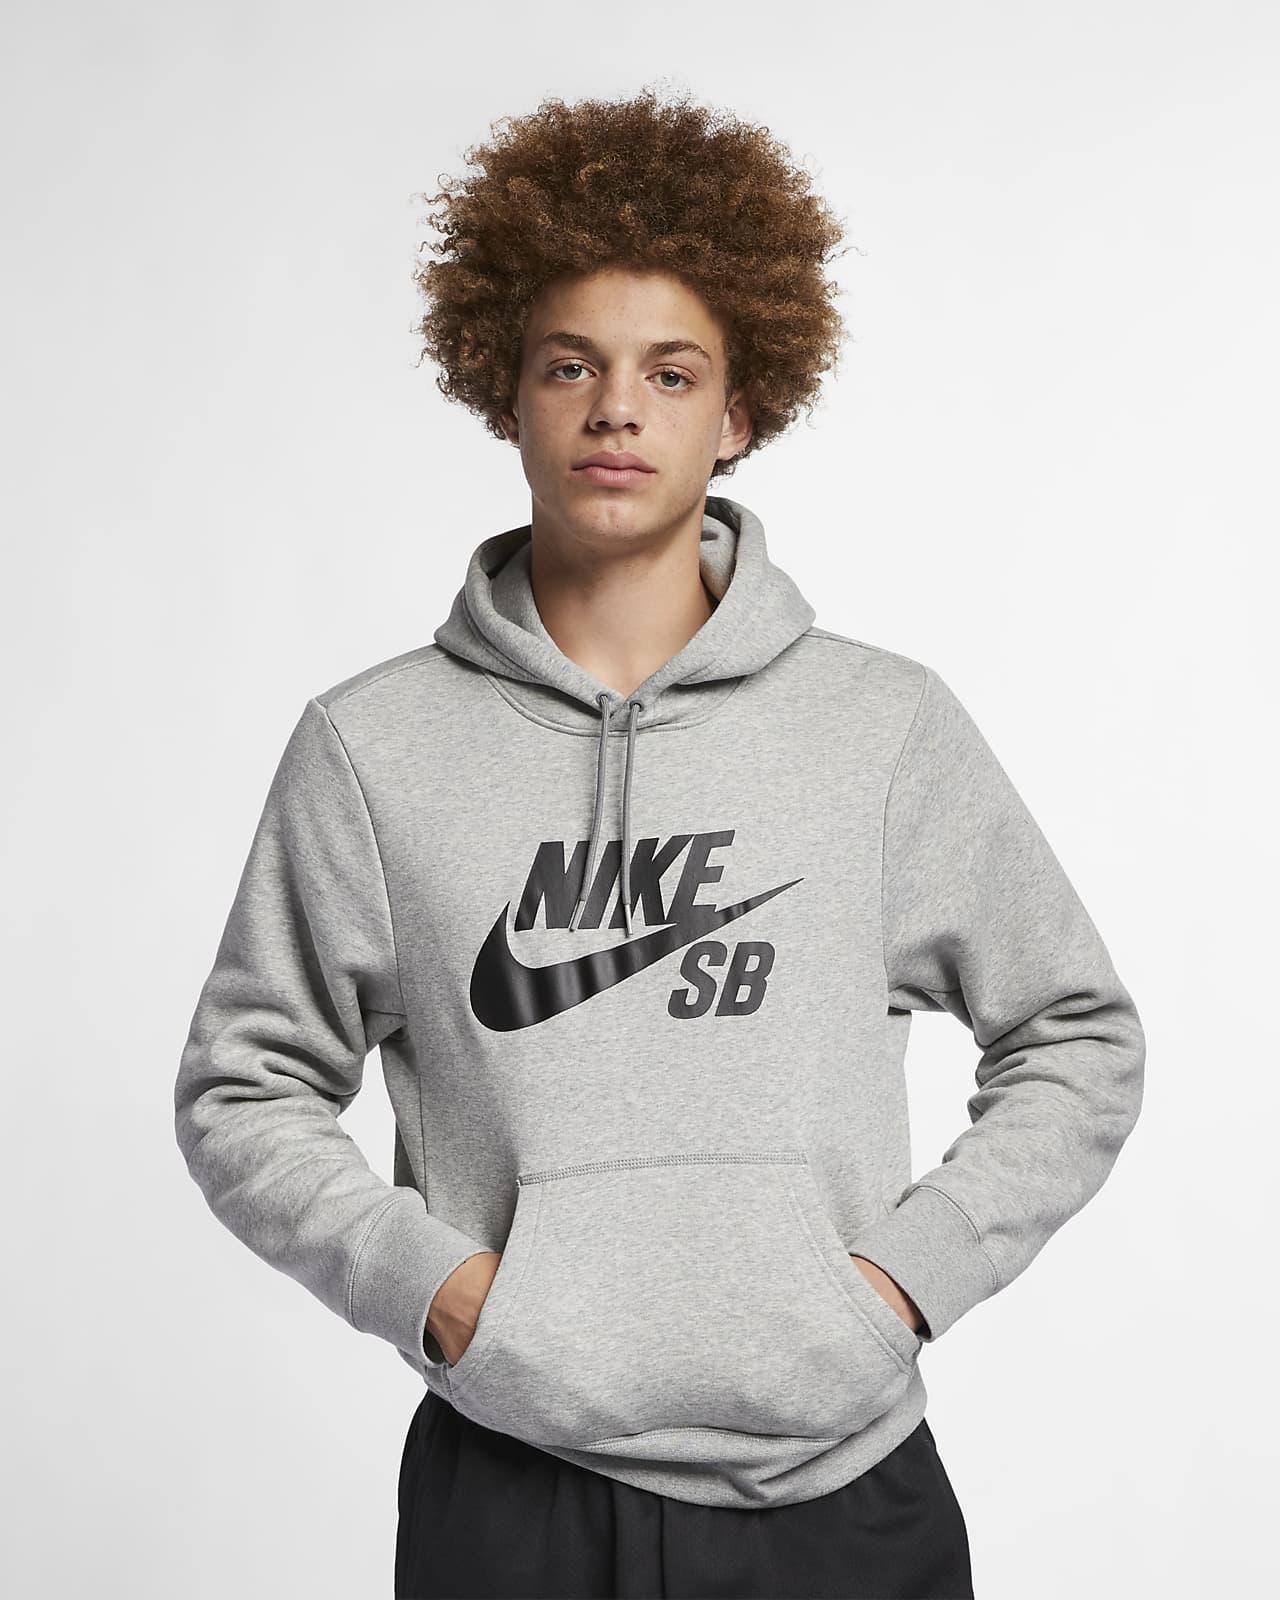 Pullover Skate Hoodie. Nike JP